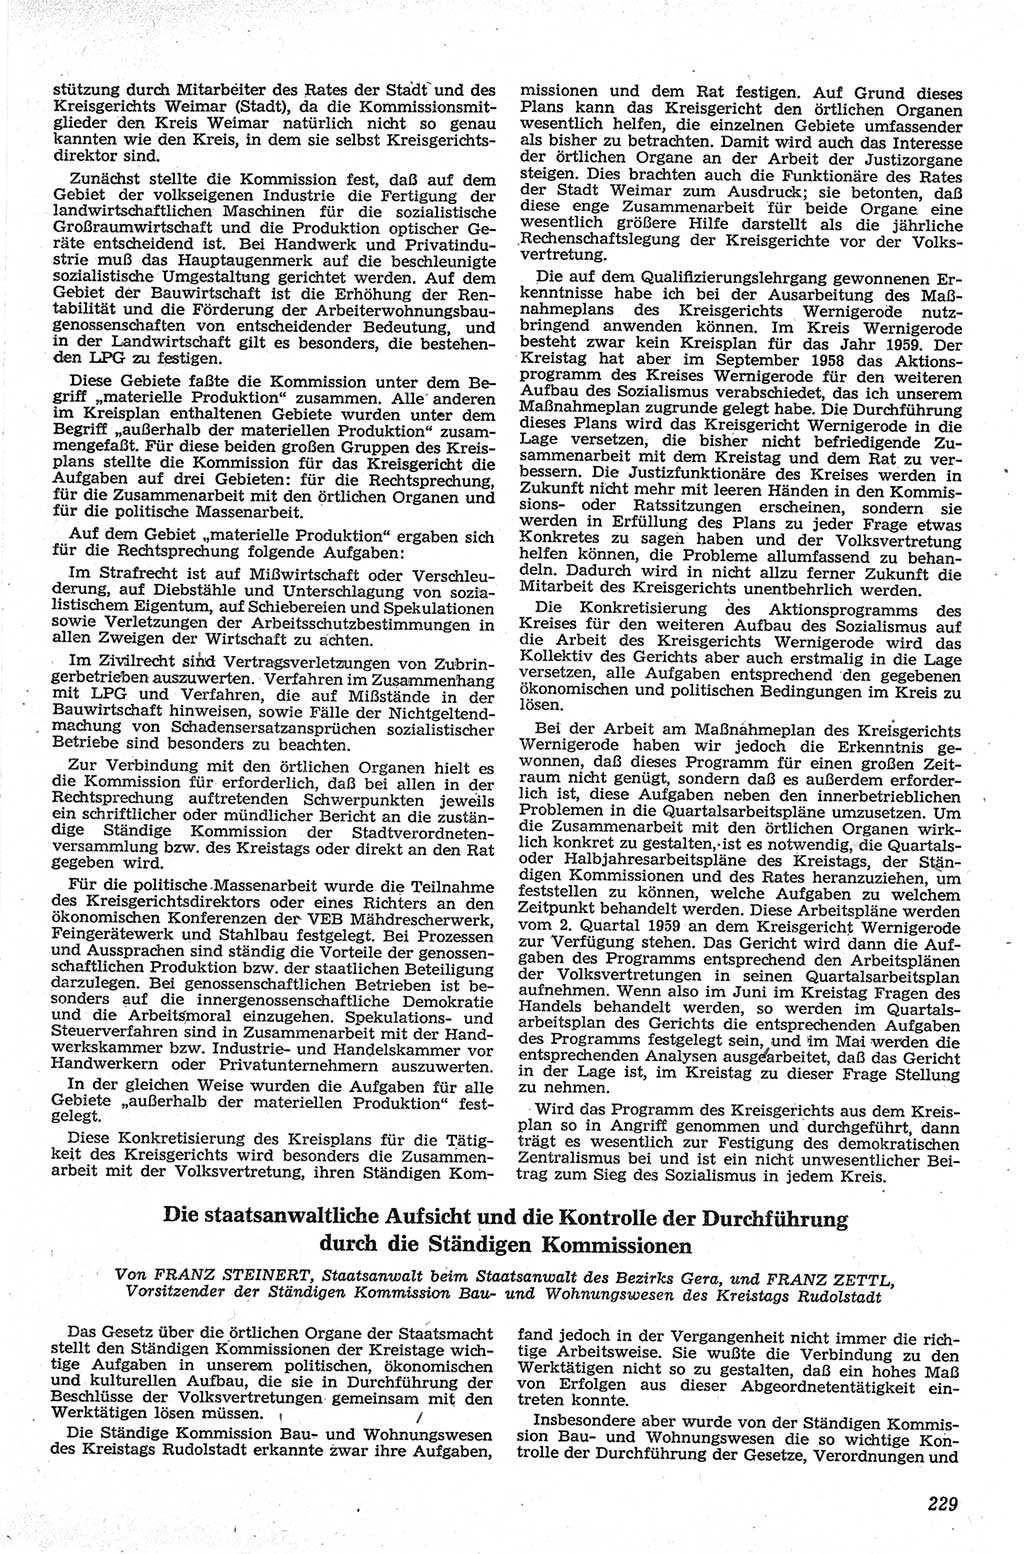 Neue Justiz (NJ), Zeitschrift für Recht und Rechtswissenschaft [Deutsche Demokratische Republik (DDR)], 13. Jahrgang 1959, Seite 229 (NJ DDR 1959, S. 229)